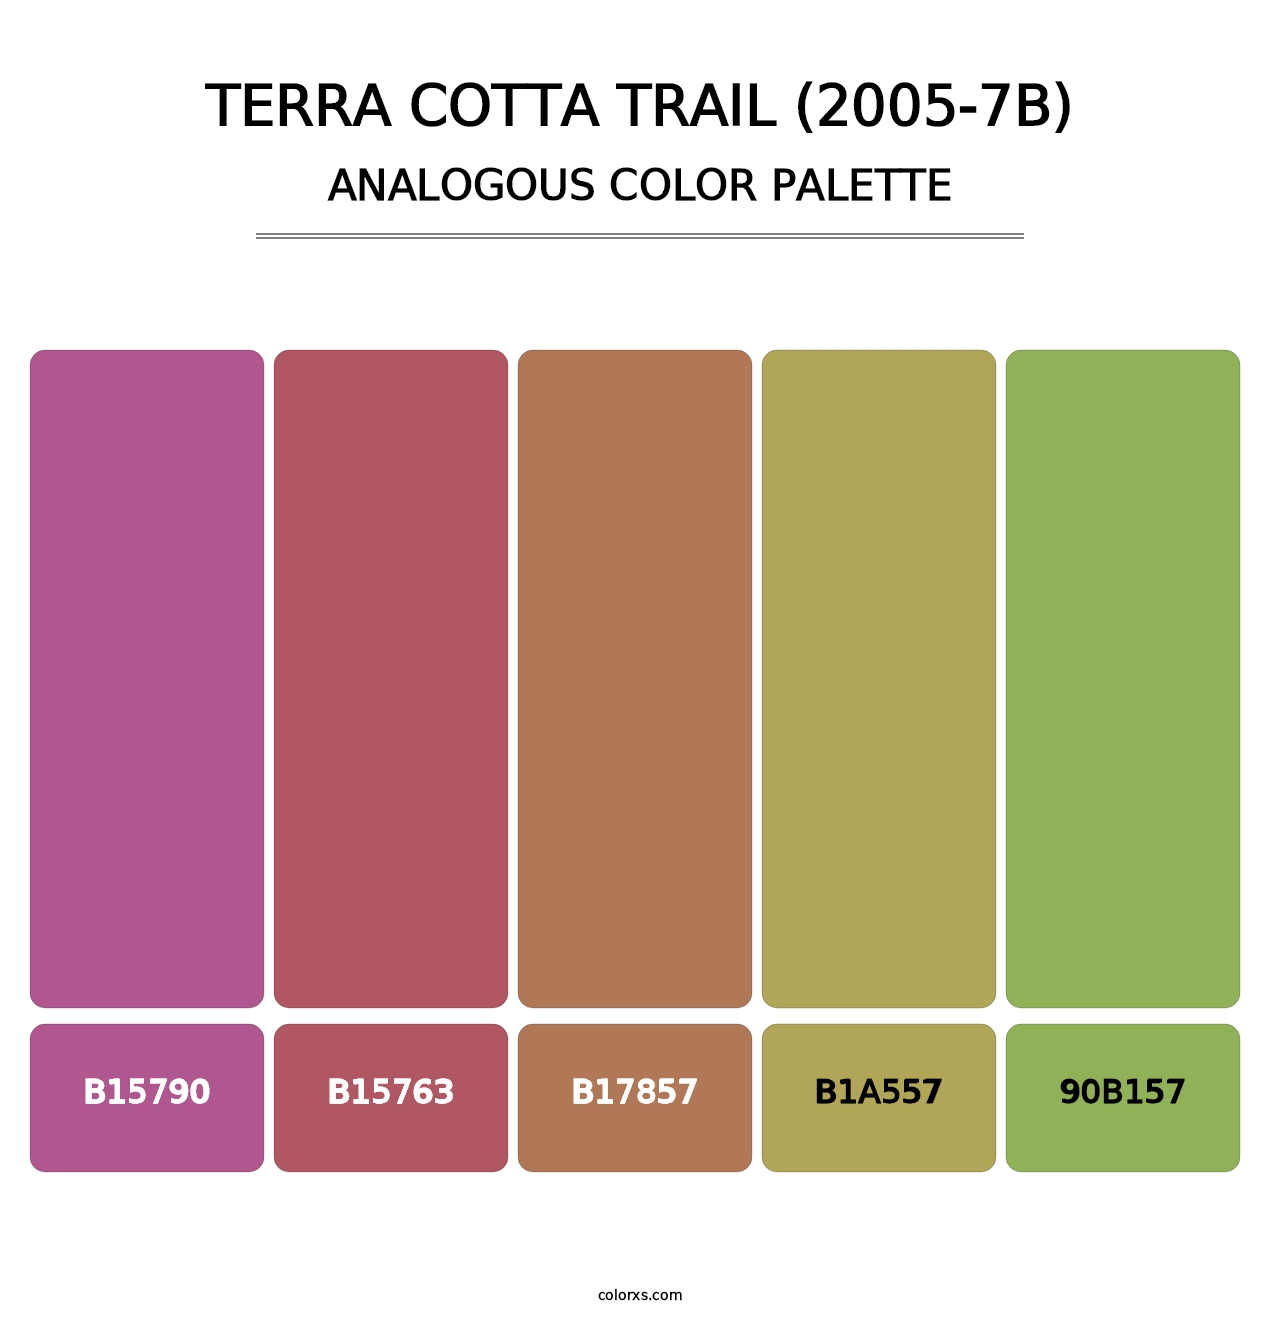 Terra Cotta Trail (2005-7B) - Analogous Color Palette